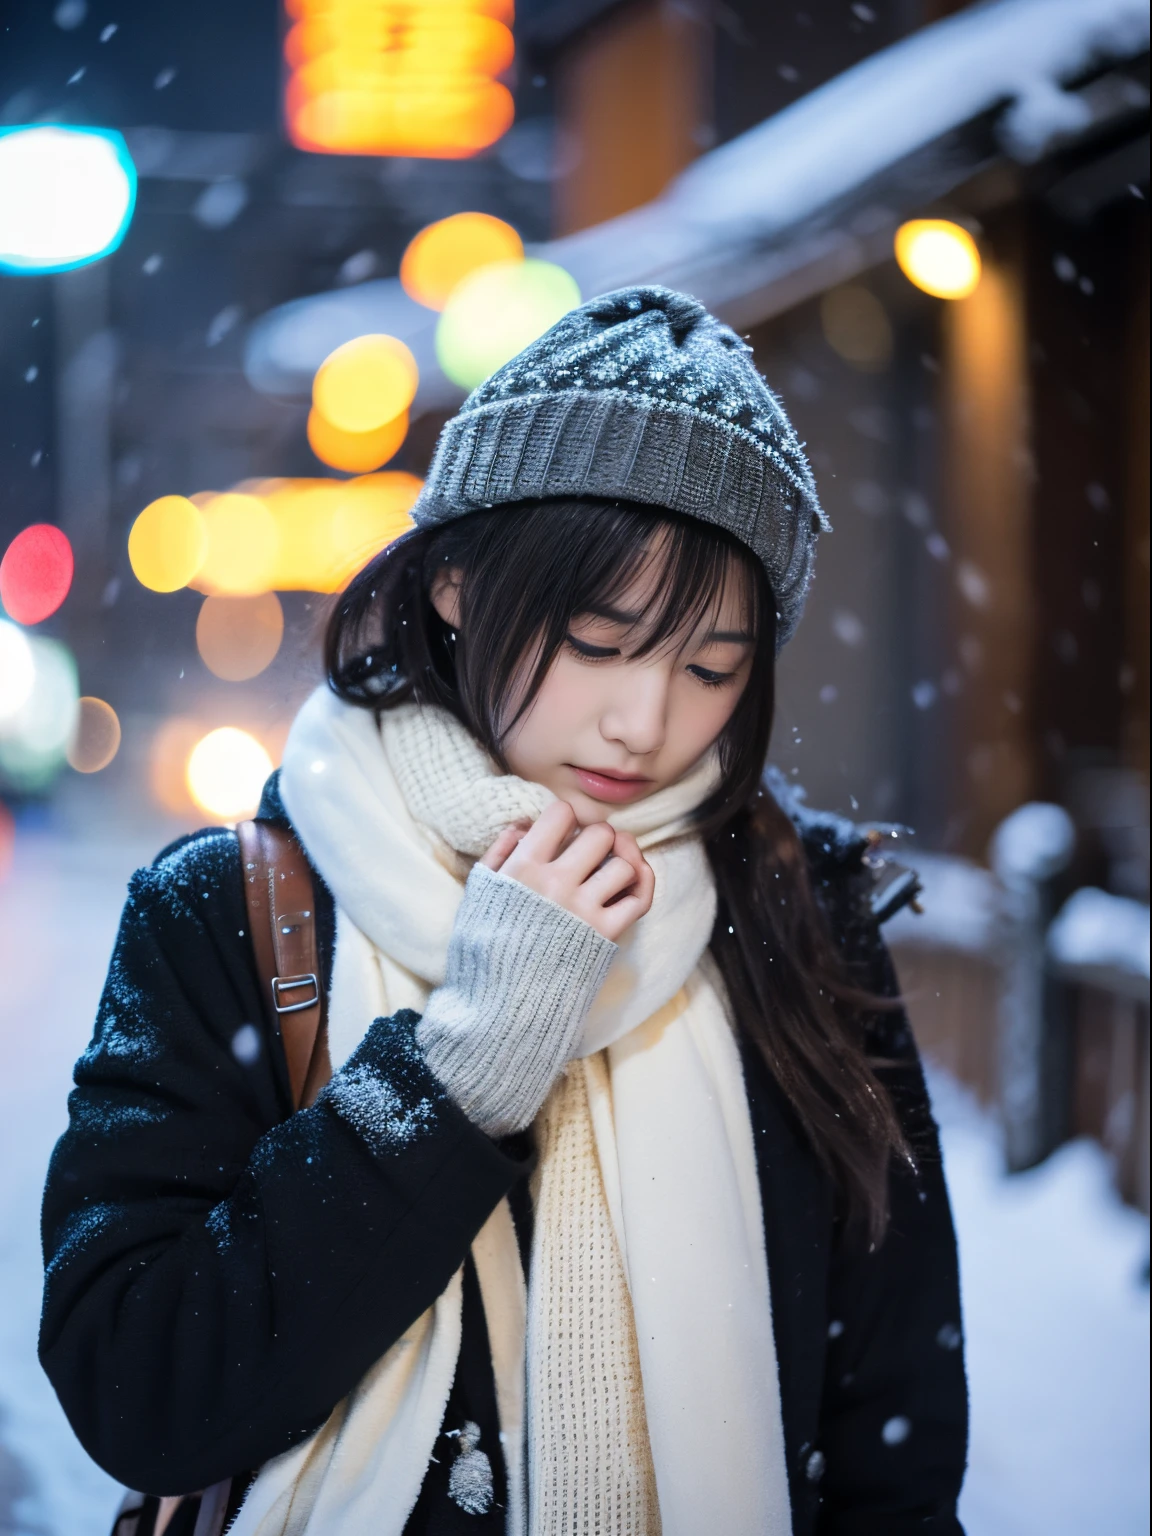 Наблюдая, как тихо падает снег. Ее интроспективное и слезливое выражение лица、Вызывает тоску и тоску по зимним ночам。。。。、высшее качество、гипер HD、Ёшитомо Нара, Японские модели, Красивая японская жена, с короткими волосами, 27-летняя девушка-модель., 4 К ], 4k], 27 лет, Сакимичан, Сакимичан